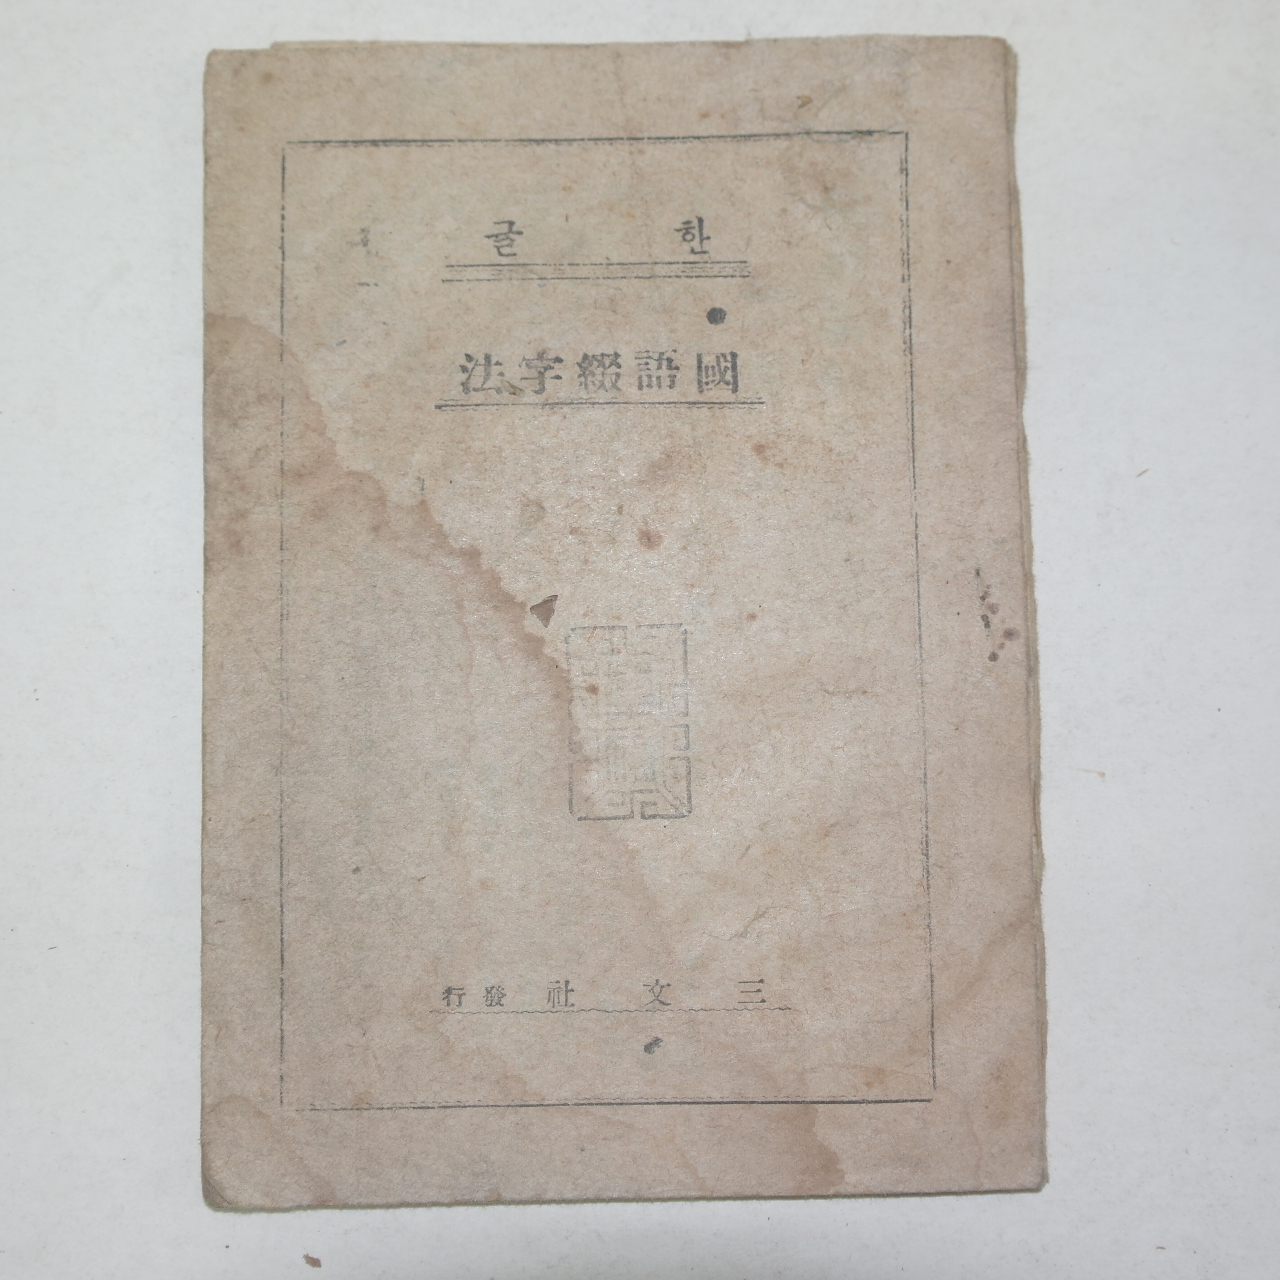 1934년 경성삼문사발행 한글 국어철자법(國語綴字法)